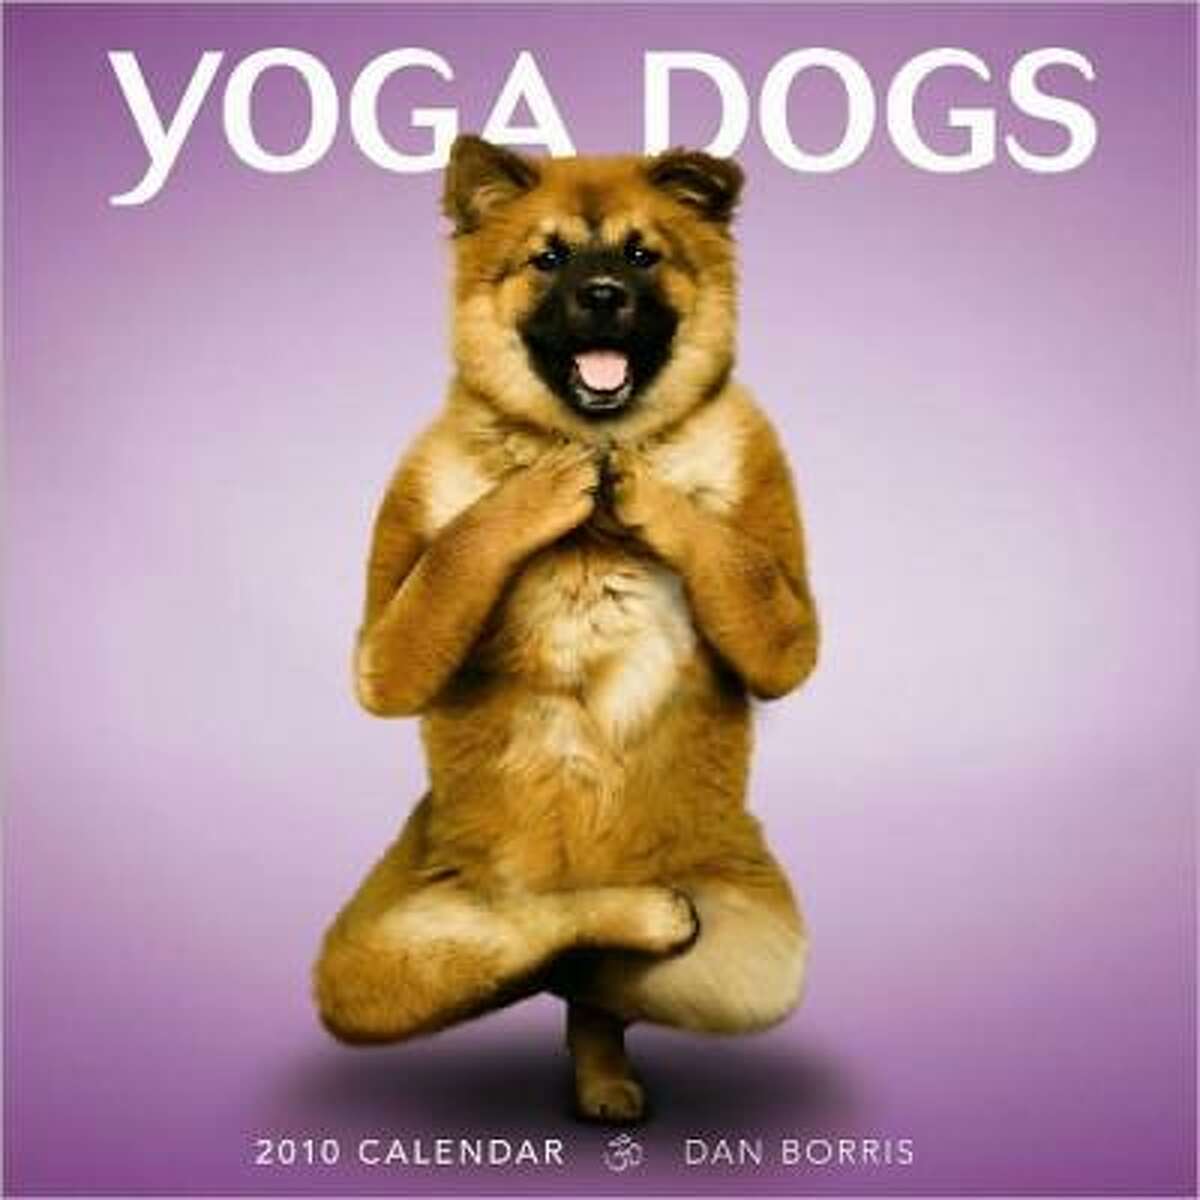 The Yoga Dogs calendar ($13.99)